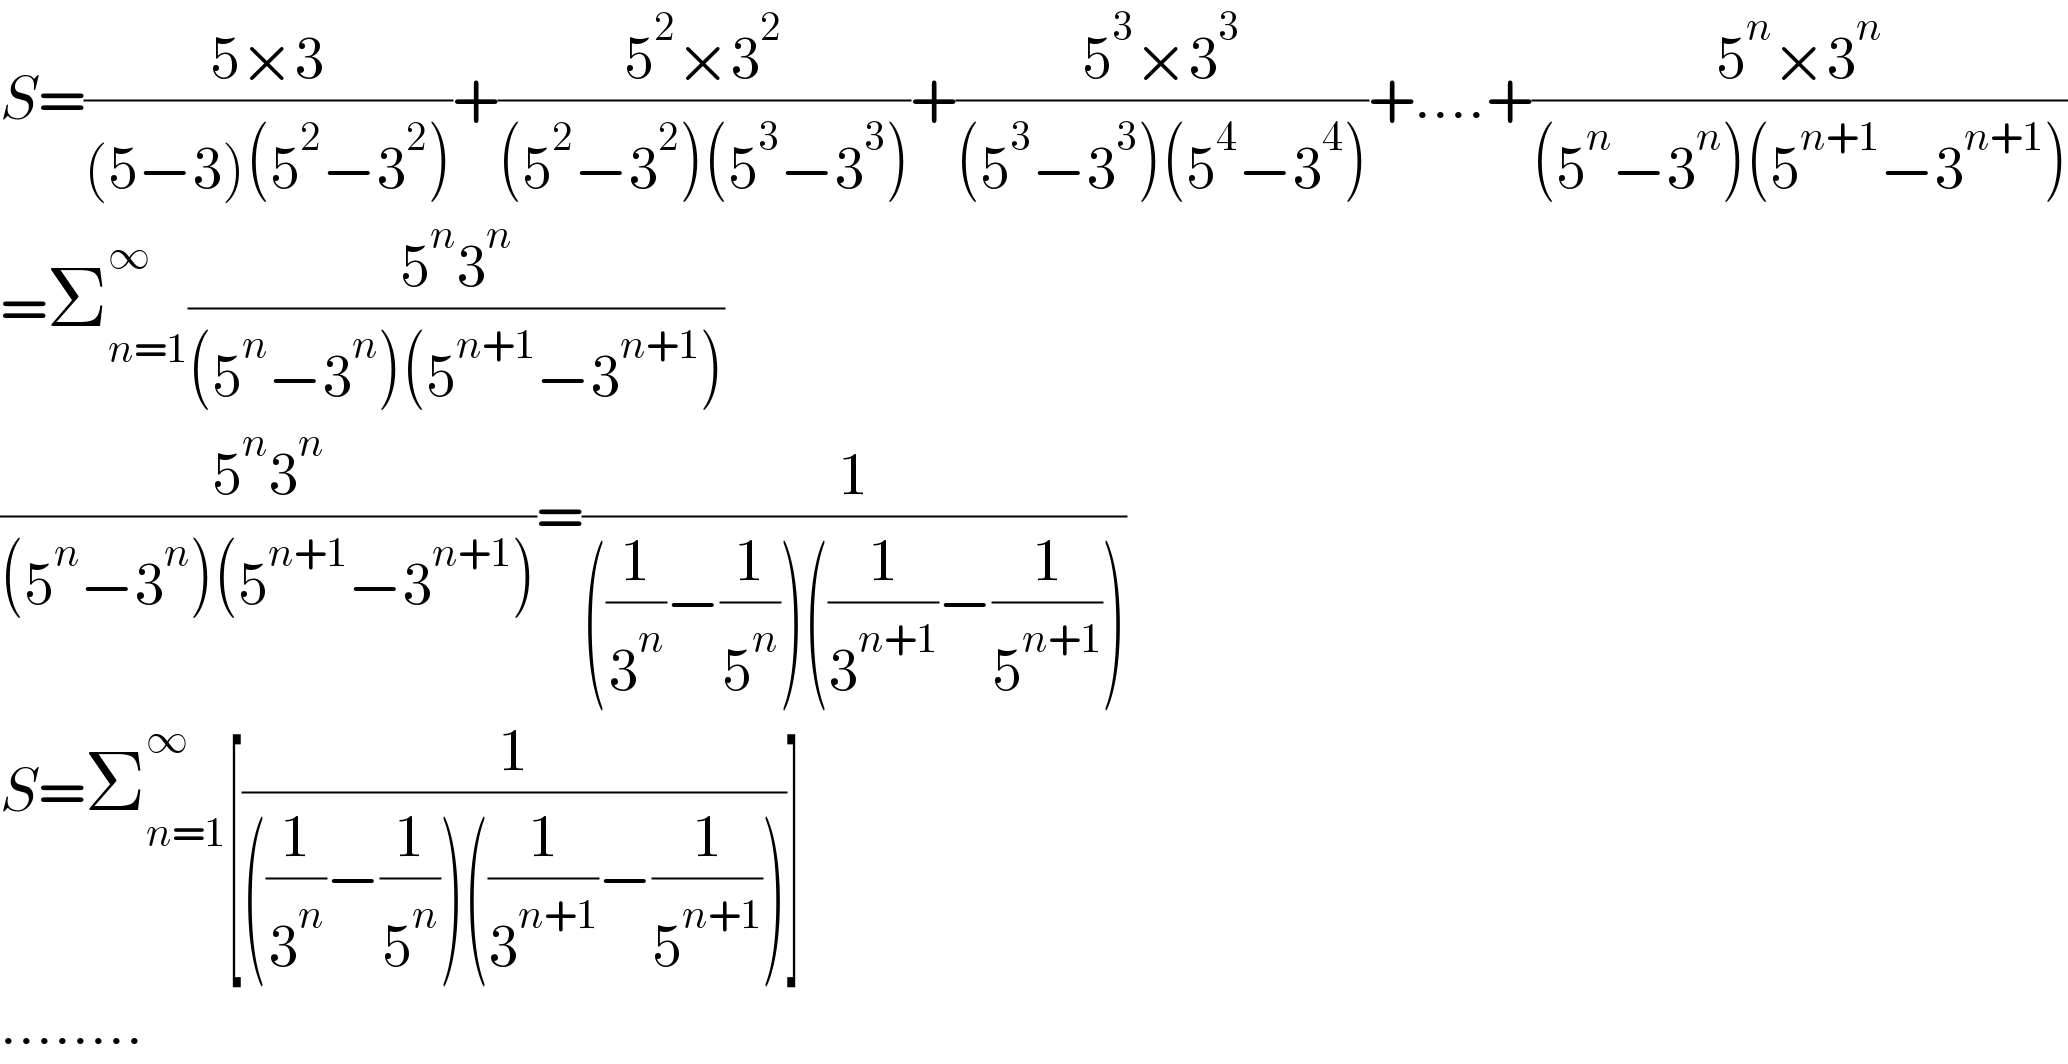 S=((5×3)/((5−3)(5^2 −3^2 )))+((5^2 ×3^2 )/((5^2 −3^2 )(5^3 −3^3 )))+((5^3 ×3^3 )/((5^3 −3^3 )(5^4 −3^4 )))+....+((5^n ×3^n )/((5^n −3^n )(5^(n+1) −3^(n+1) )))  =Σ_(n=1) ^∞ ((5^n 3^n )/((5^n −3^n )(5^(n+1) −3^(n+1) )))  ((5^n 3^n )/((5^n −3^n )(5^(n+1) −3^(n+1) )))=(1/(((1/3^n )−(1/5^n ))((1/3^(n+1) )−(1/5^(n+1) ))))  S=Σ_(n=1) ^∞ [(1/(((1/3^n )−(1/5^n ))((1/3^(n+1) )−(1/5^(n+1) ))))]  ........  